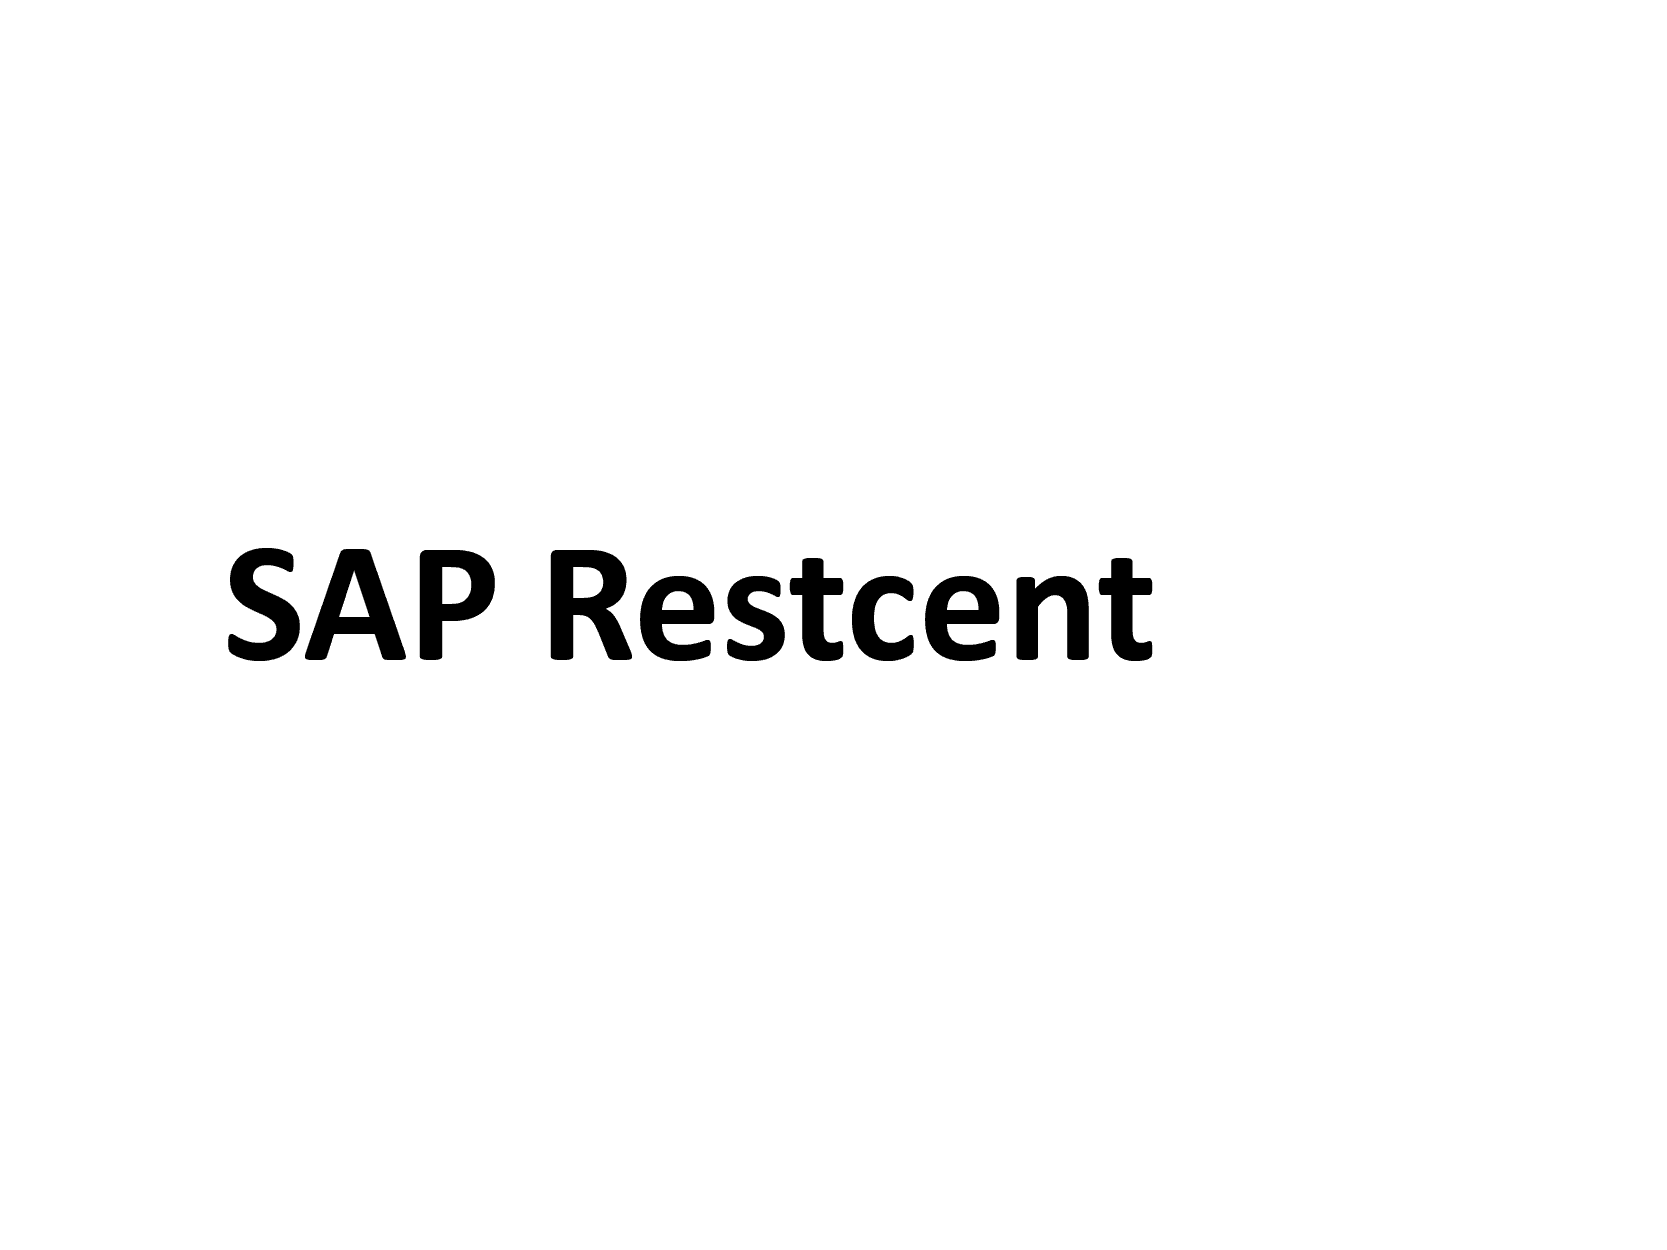 Schriftzug SAP Restcent